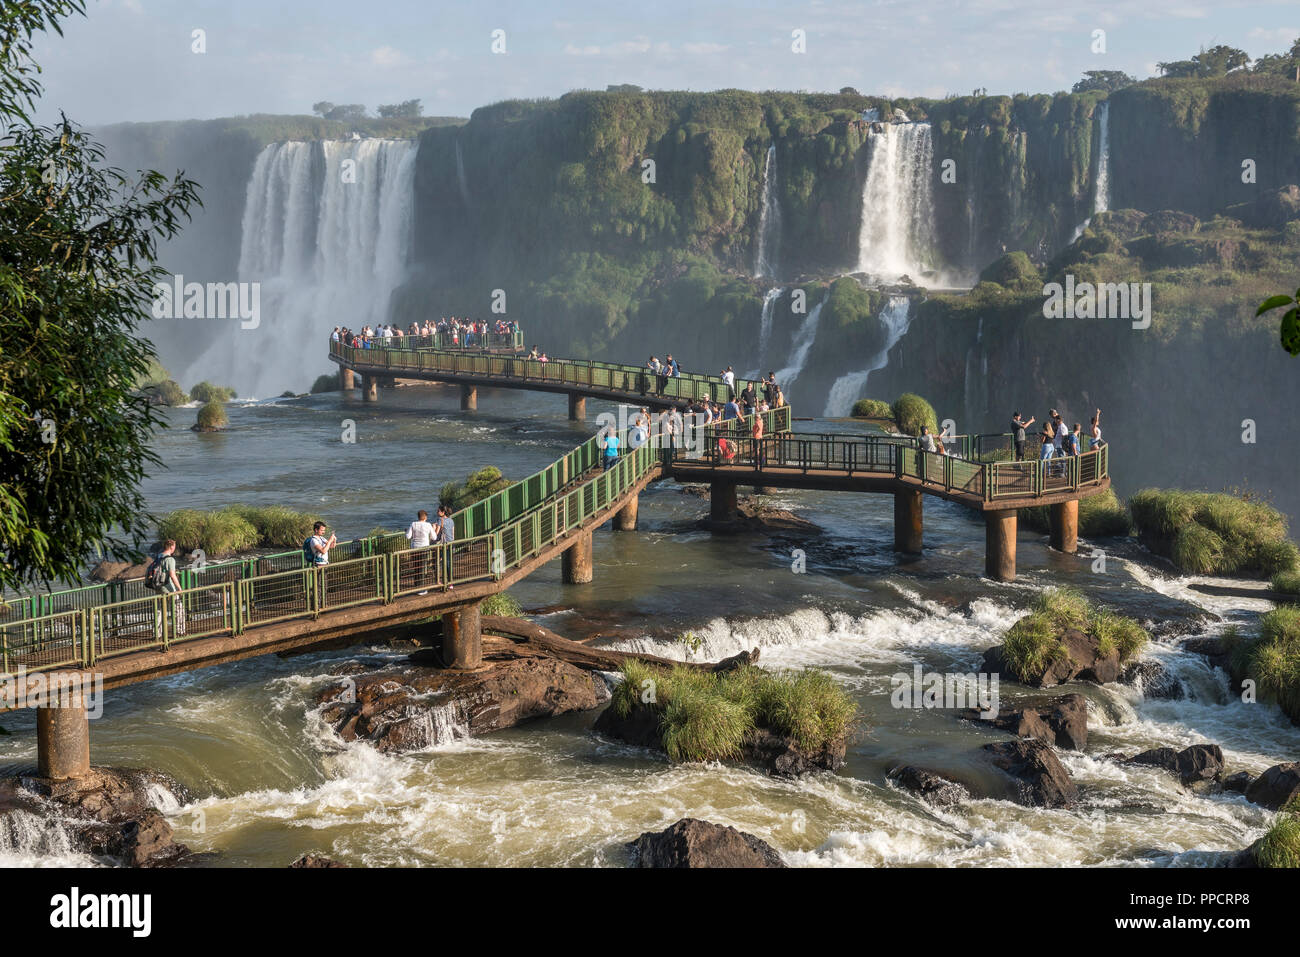 Grand groupe de touristes sur le pont bénéficiant beau paysage d'Iguazu, l'État de Parana, Brésil Banque D'Images